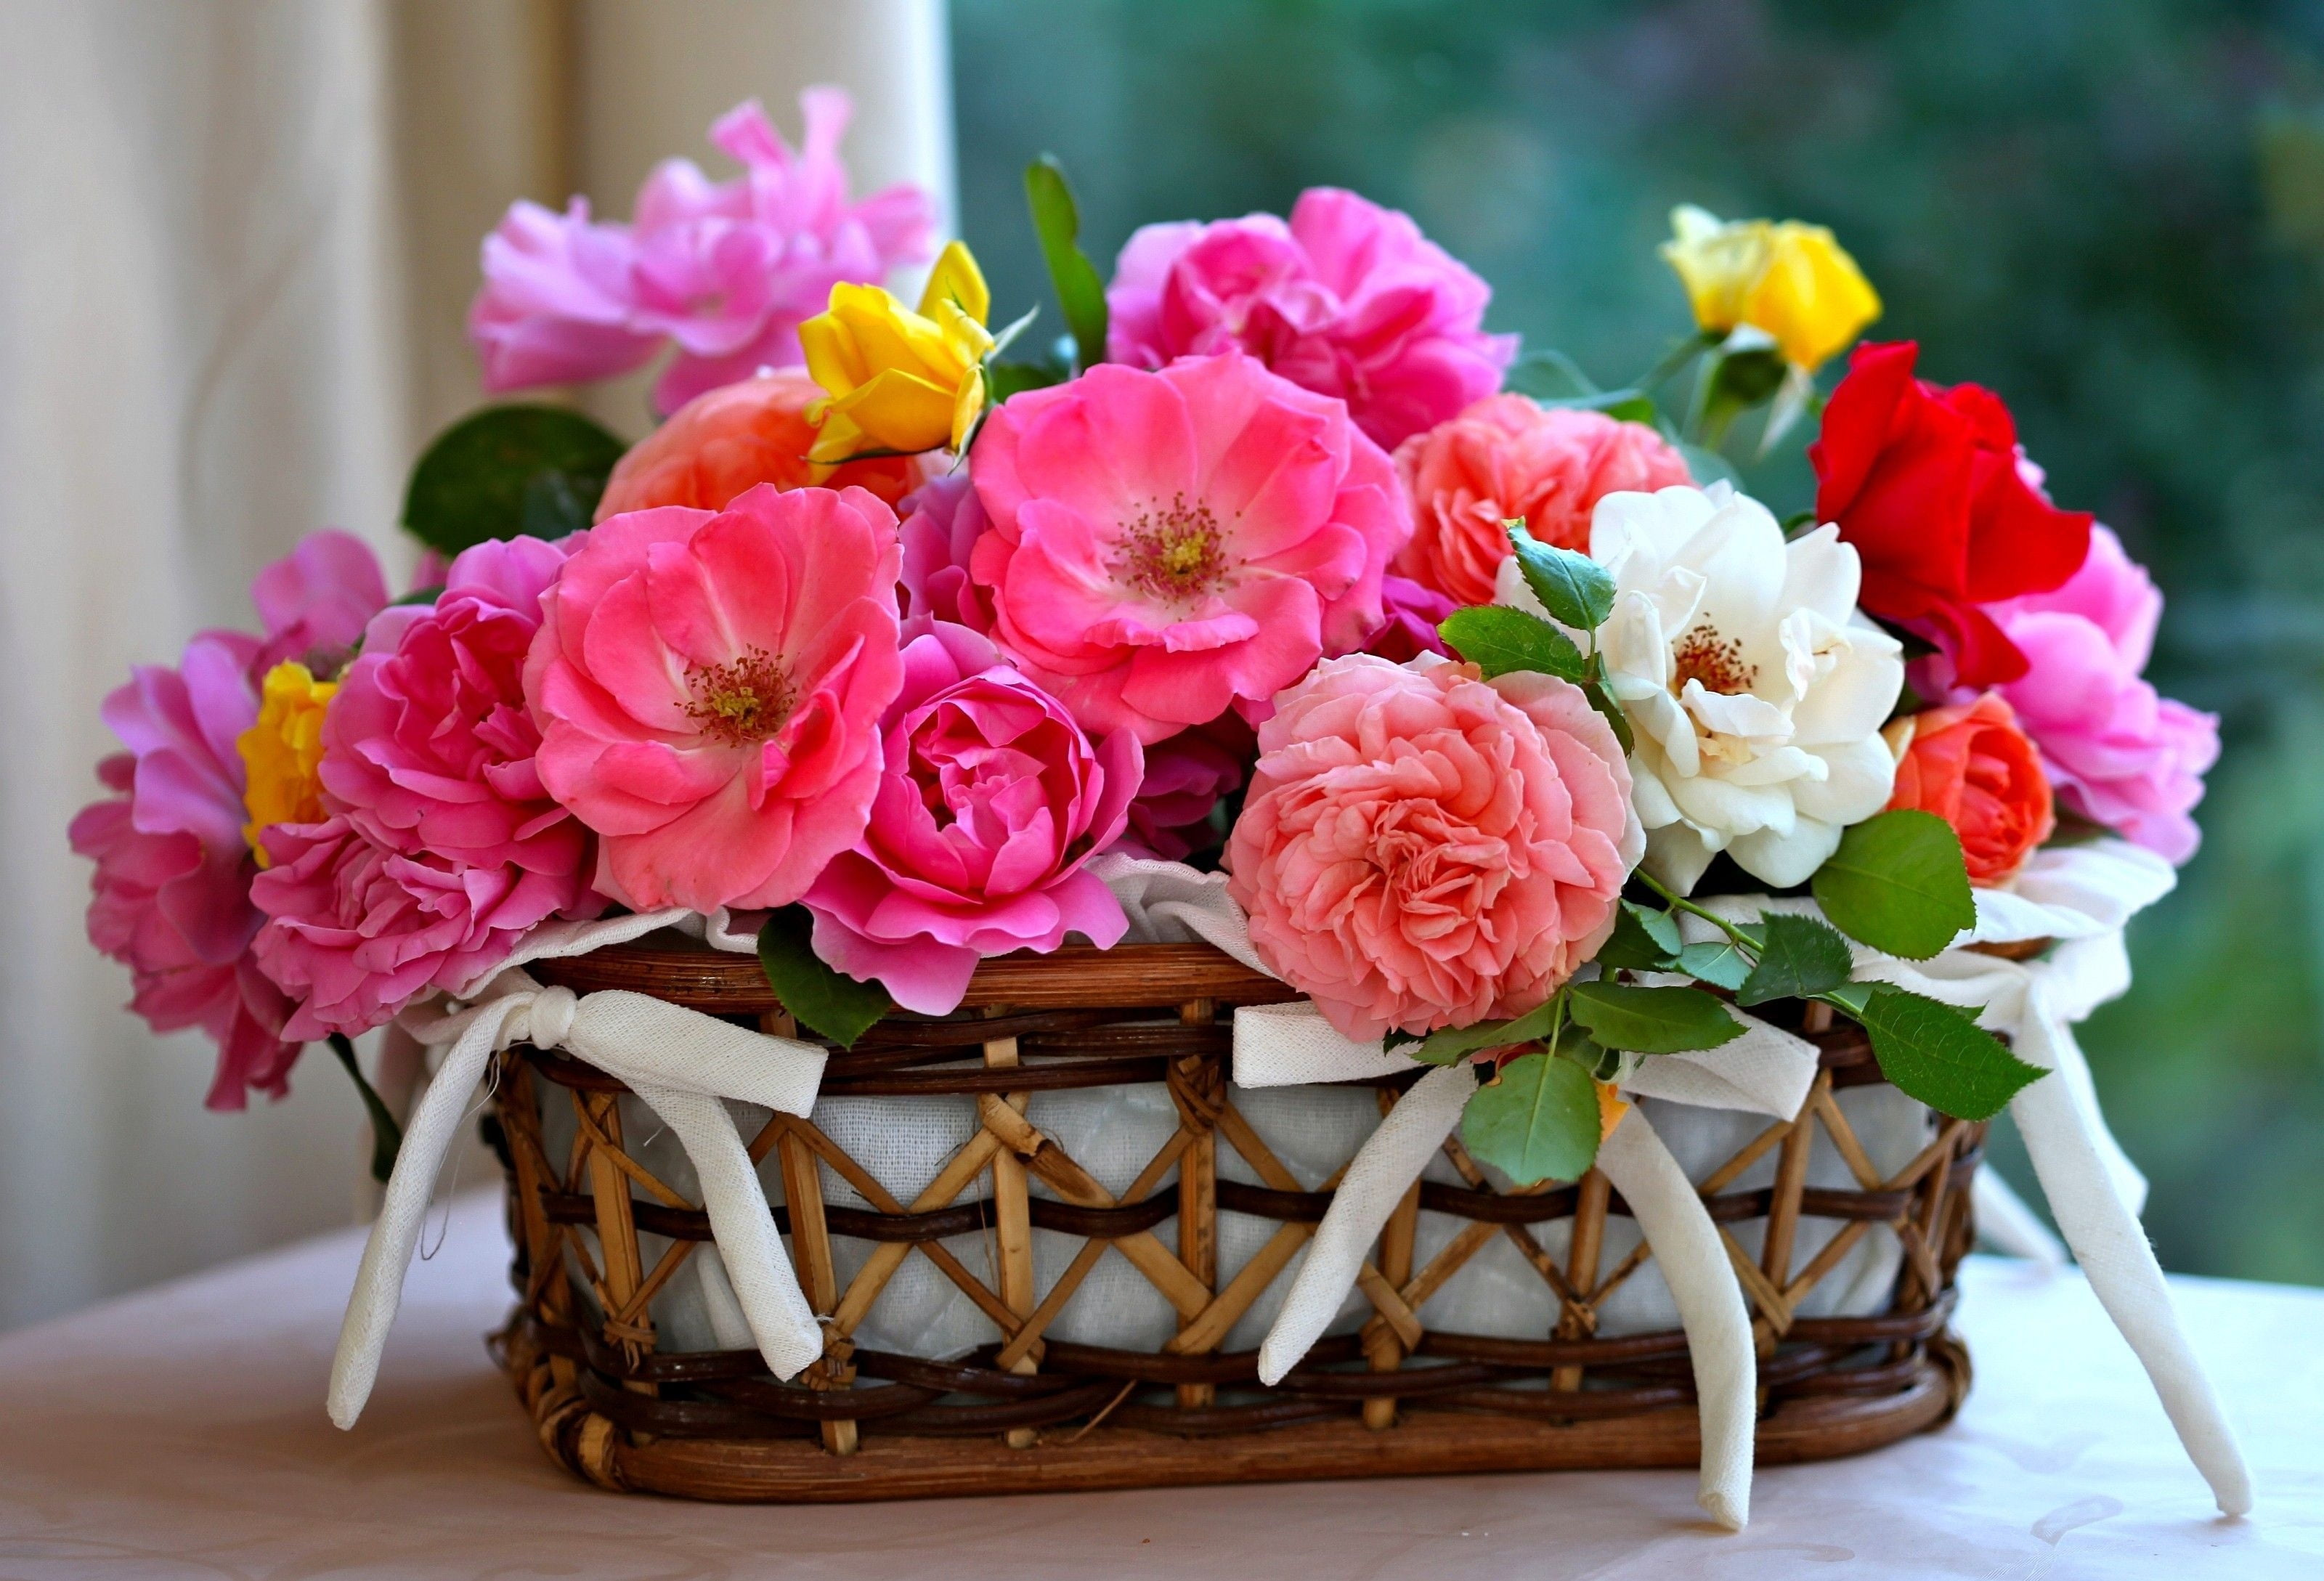 rattan basket full of flowers